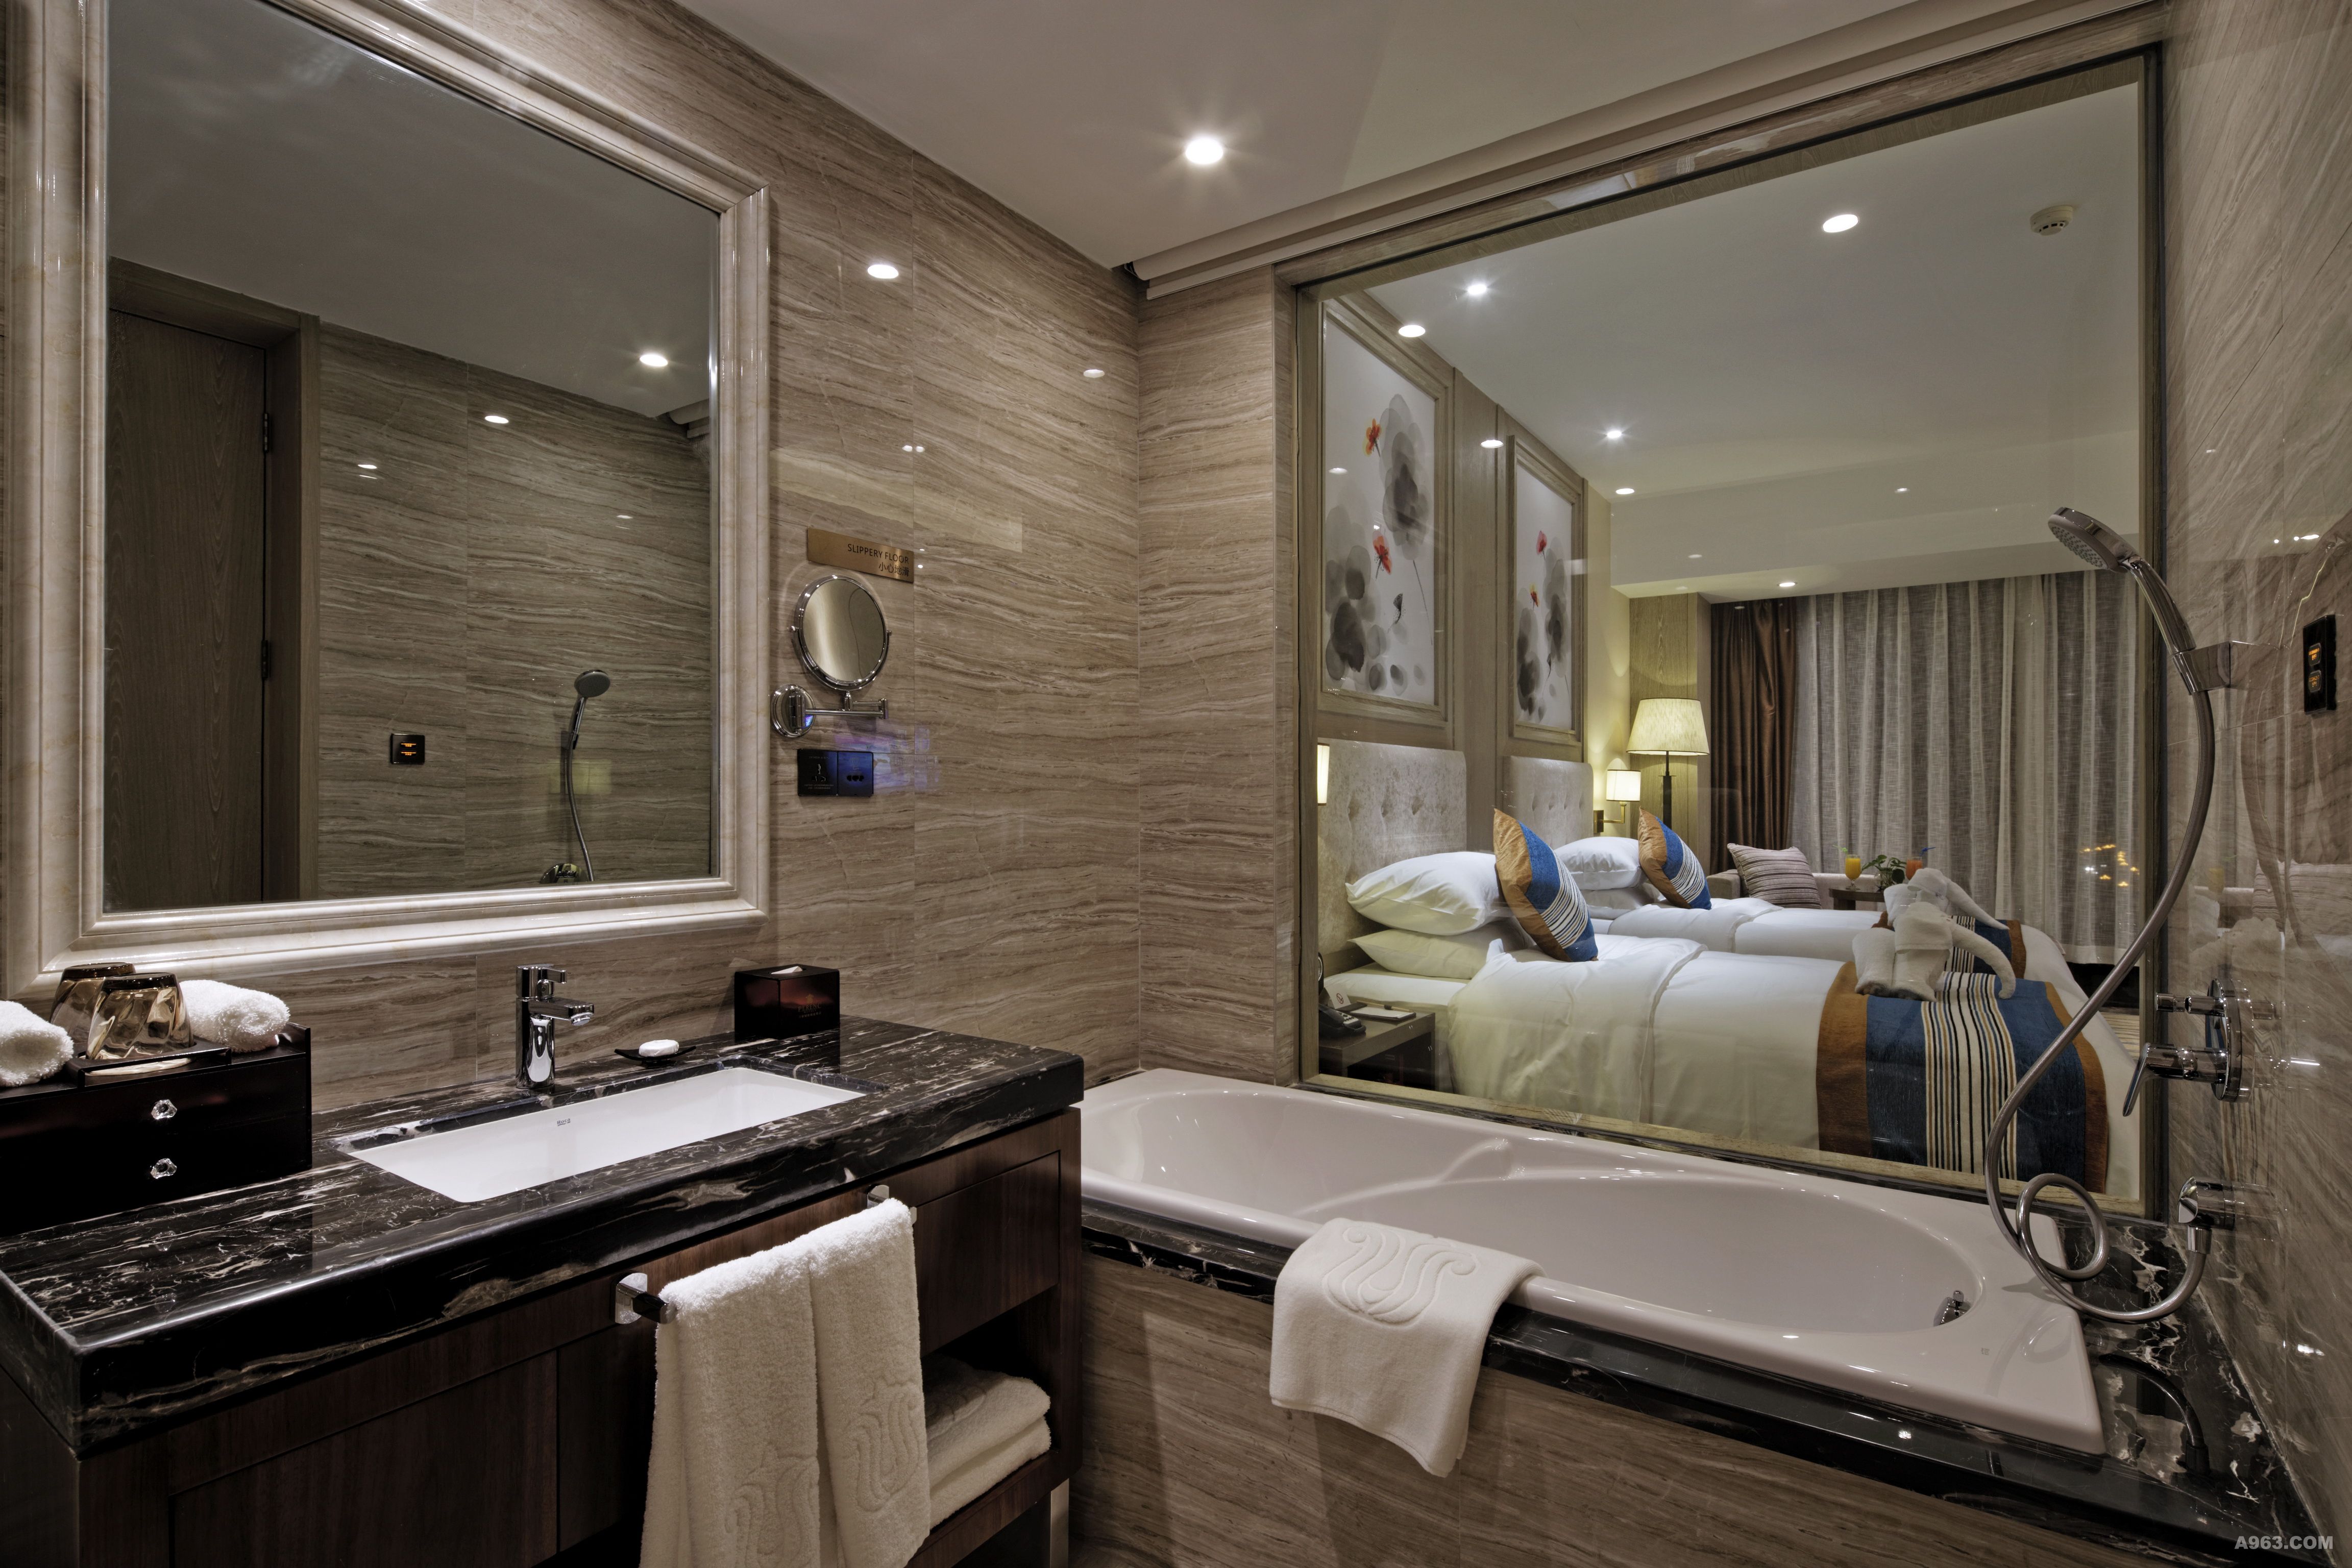 作为安顺首家五星级酒店,本项目投入使用以来提升了本地酒店的标准